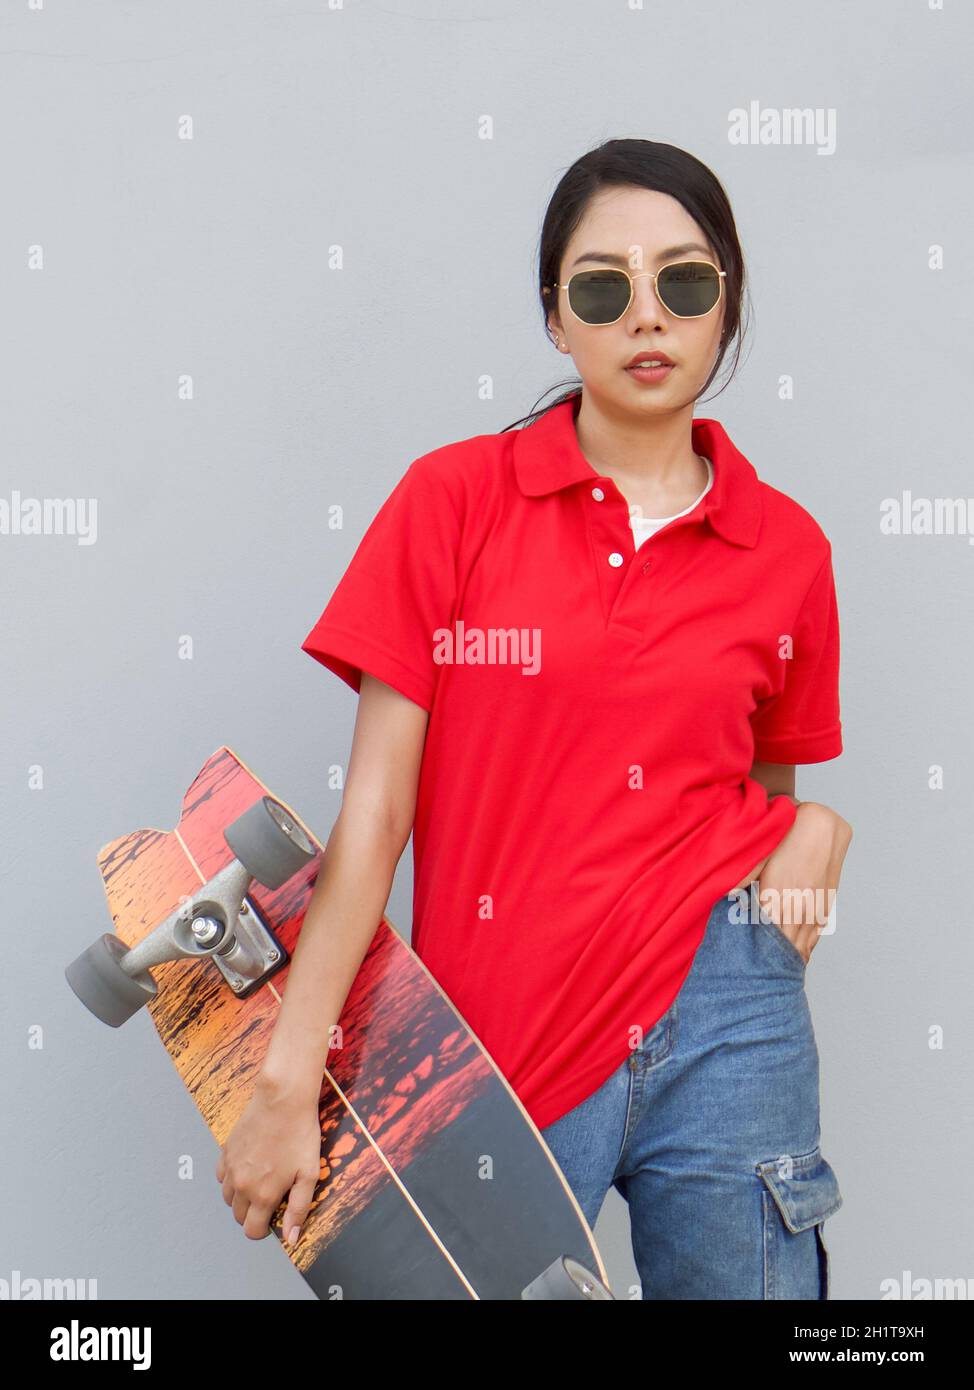 Mujer asiática joven en camiseta roja con cuello sosteniendo la tabla de surf en posición de cadera. Mientras que ponga otra mano en el bolsillo de jean. Vertical sobre fondo gris Foto de stock